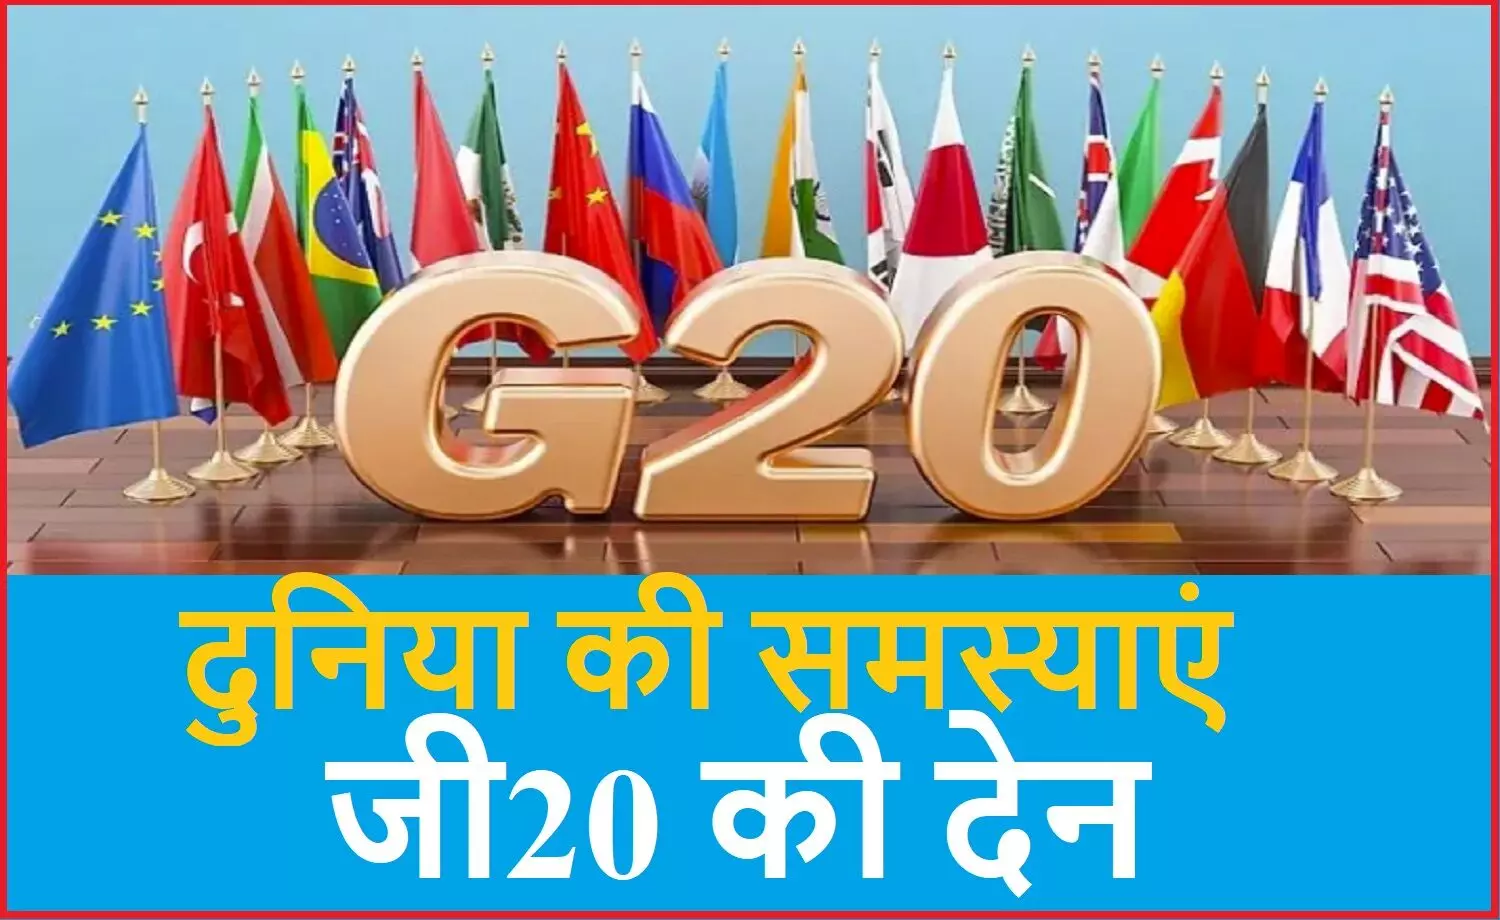 दुनिया की सारी मुश्किलें जी20 जैसे गुटों ने कीं पैदा : वैश्विक आर्थिक मंदी, मानवाधिकार, समानता और पर्यावरण की समस्यायें इनकी देन